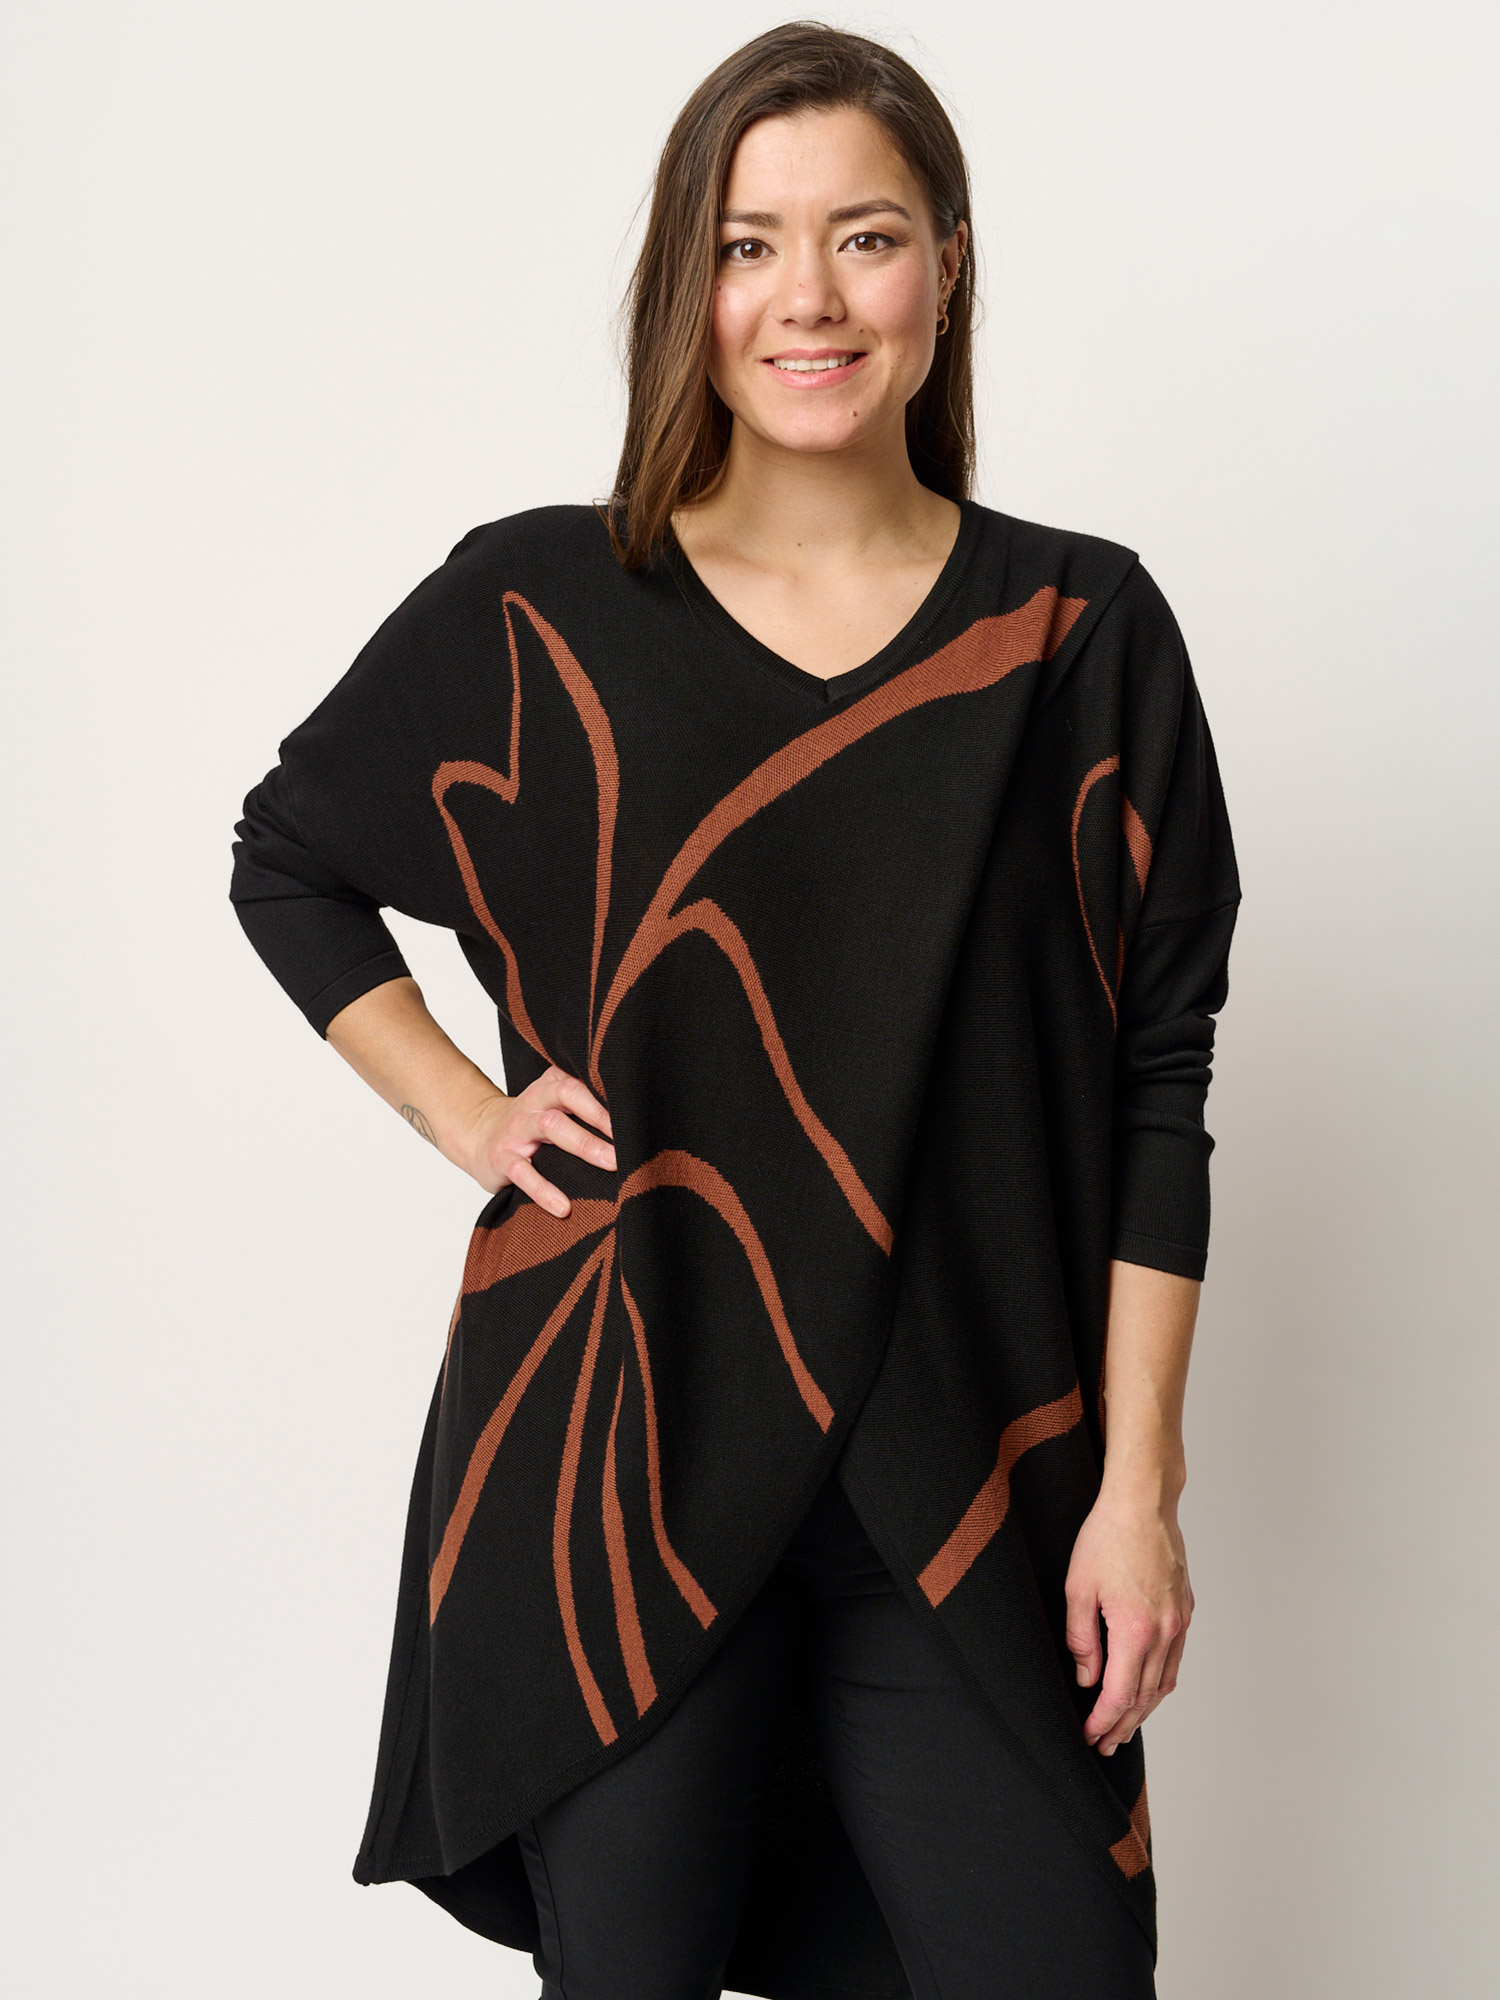 Billede af Pont Neuf Sort og nougat mønstret bluse i lækker viskose strik, 48-50 / XL